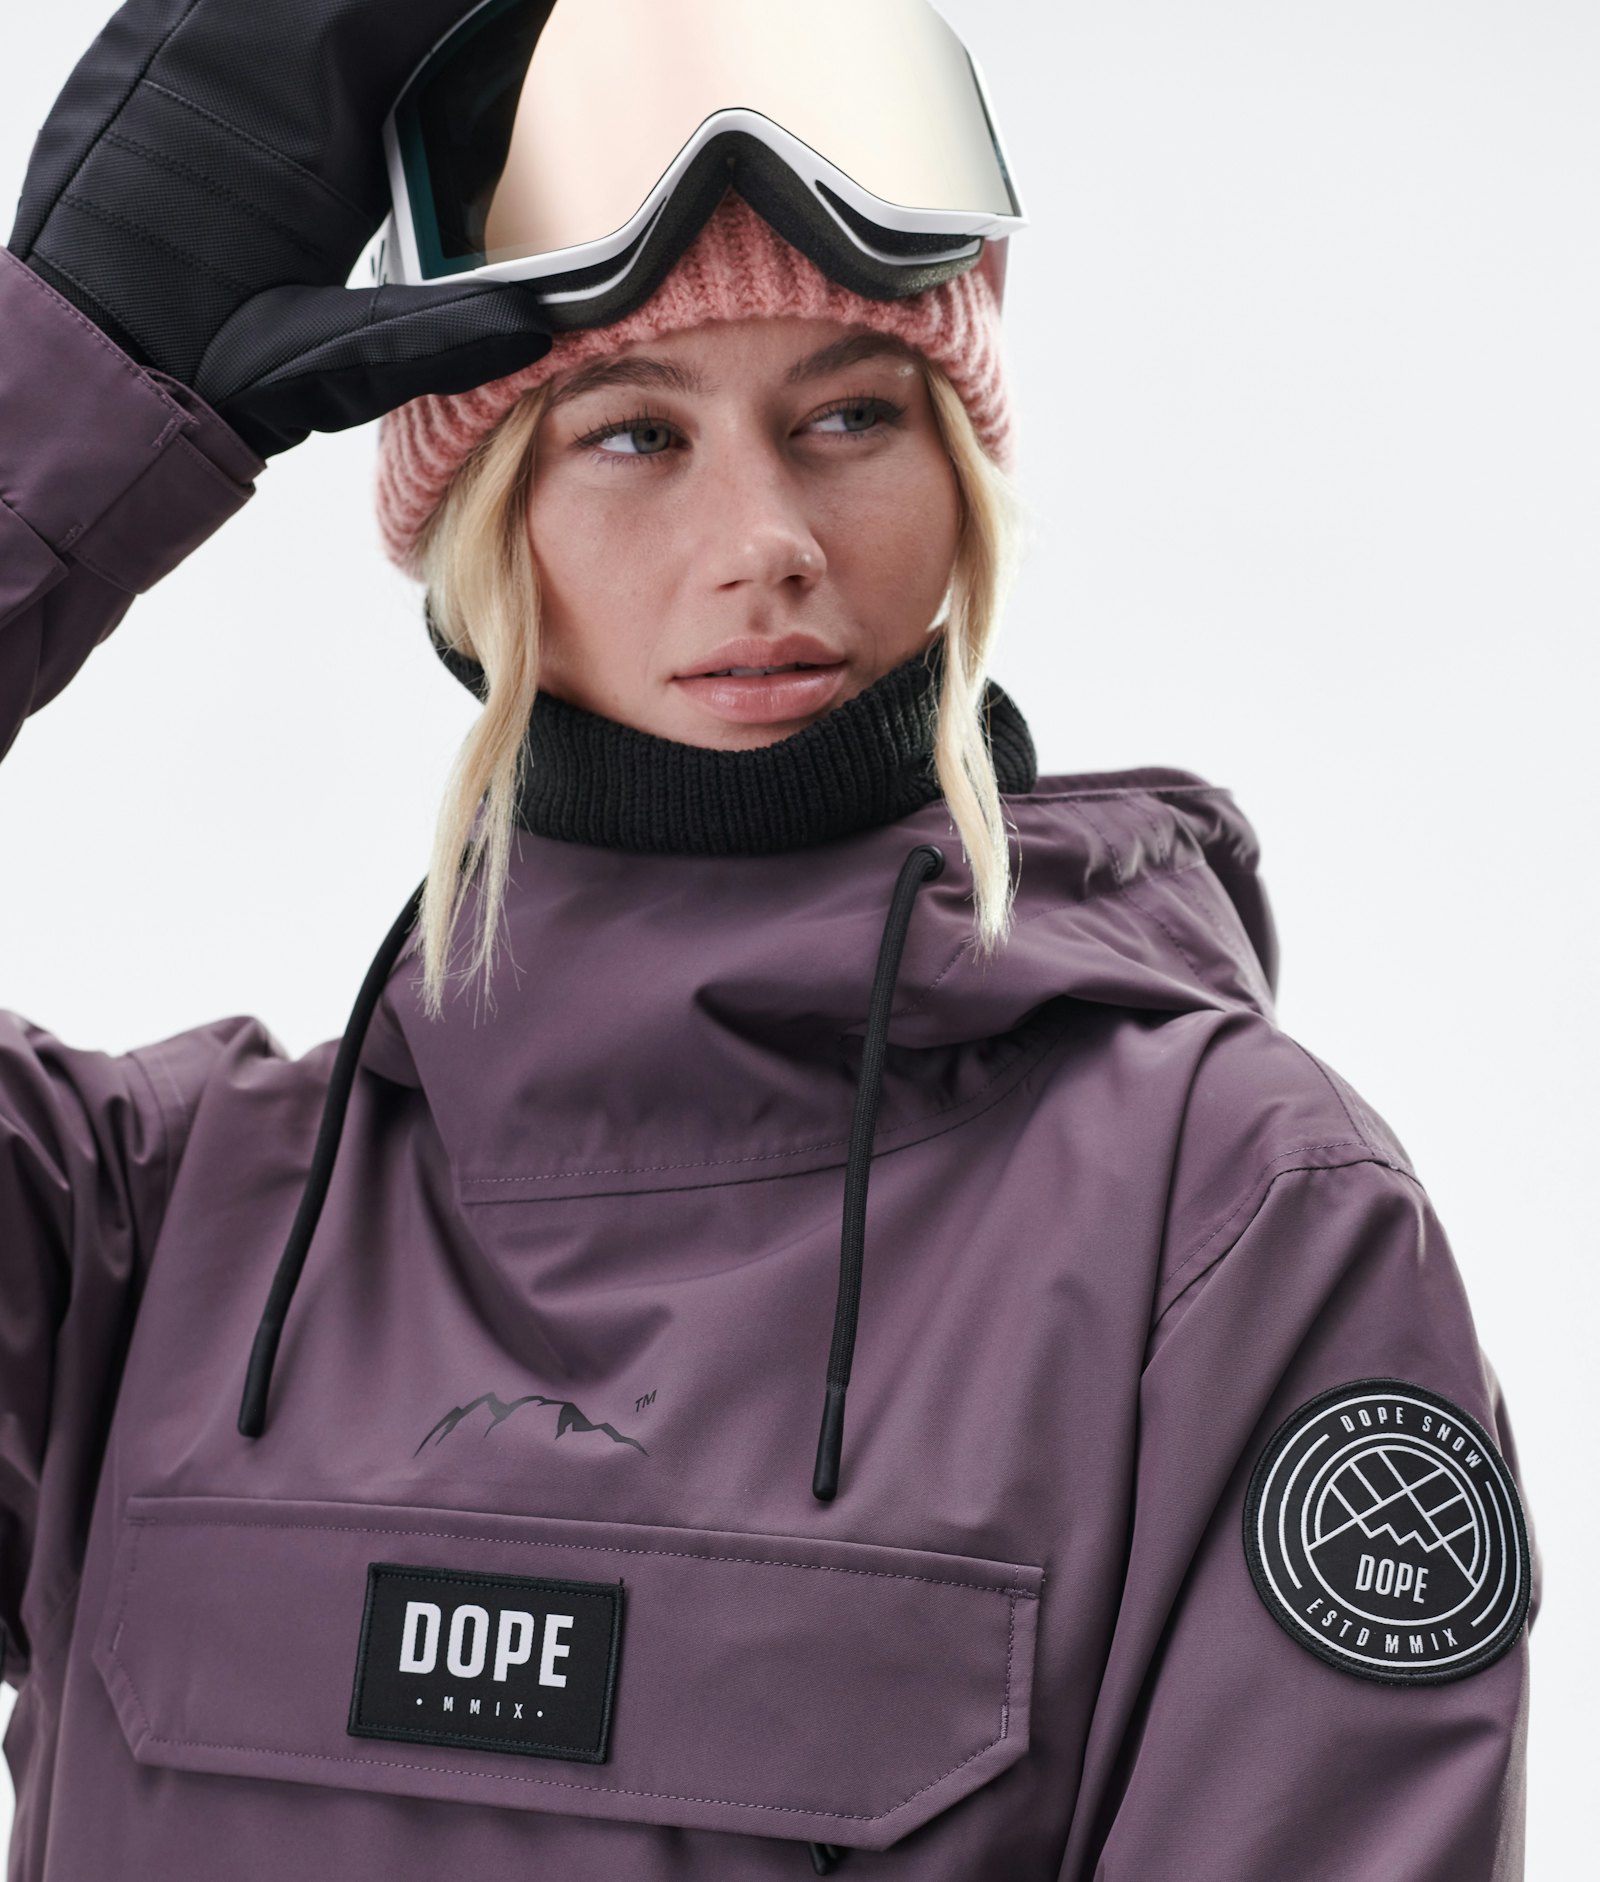 Dope Blizzard W 2020 Snowboard Jacket Women Faded Grape